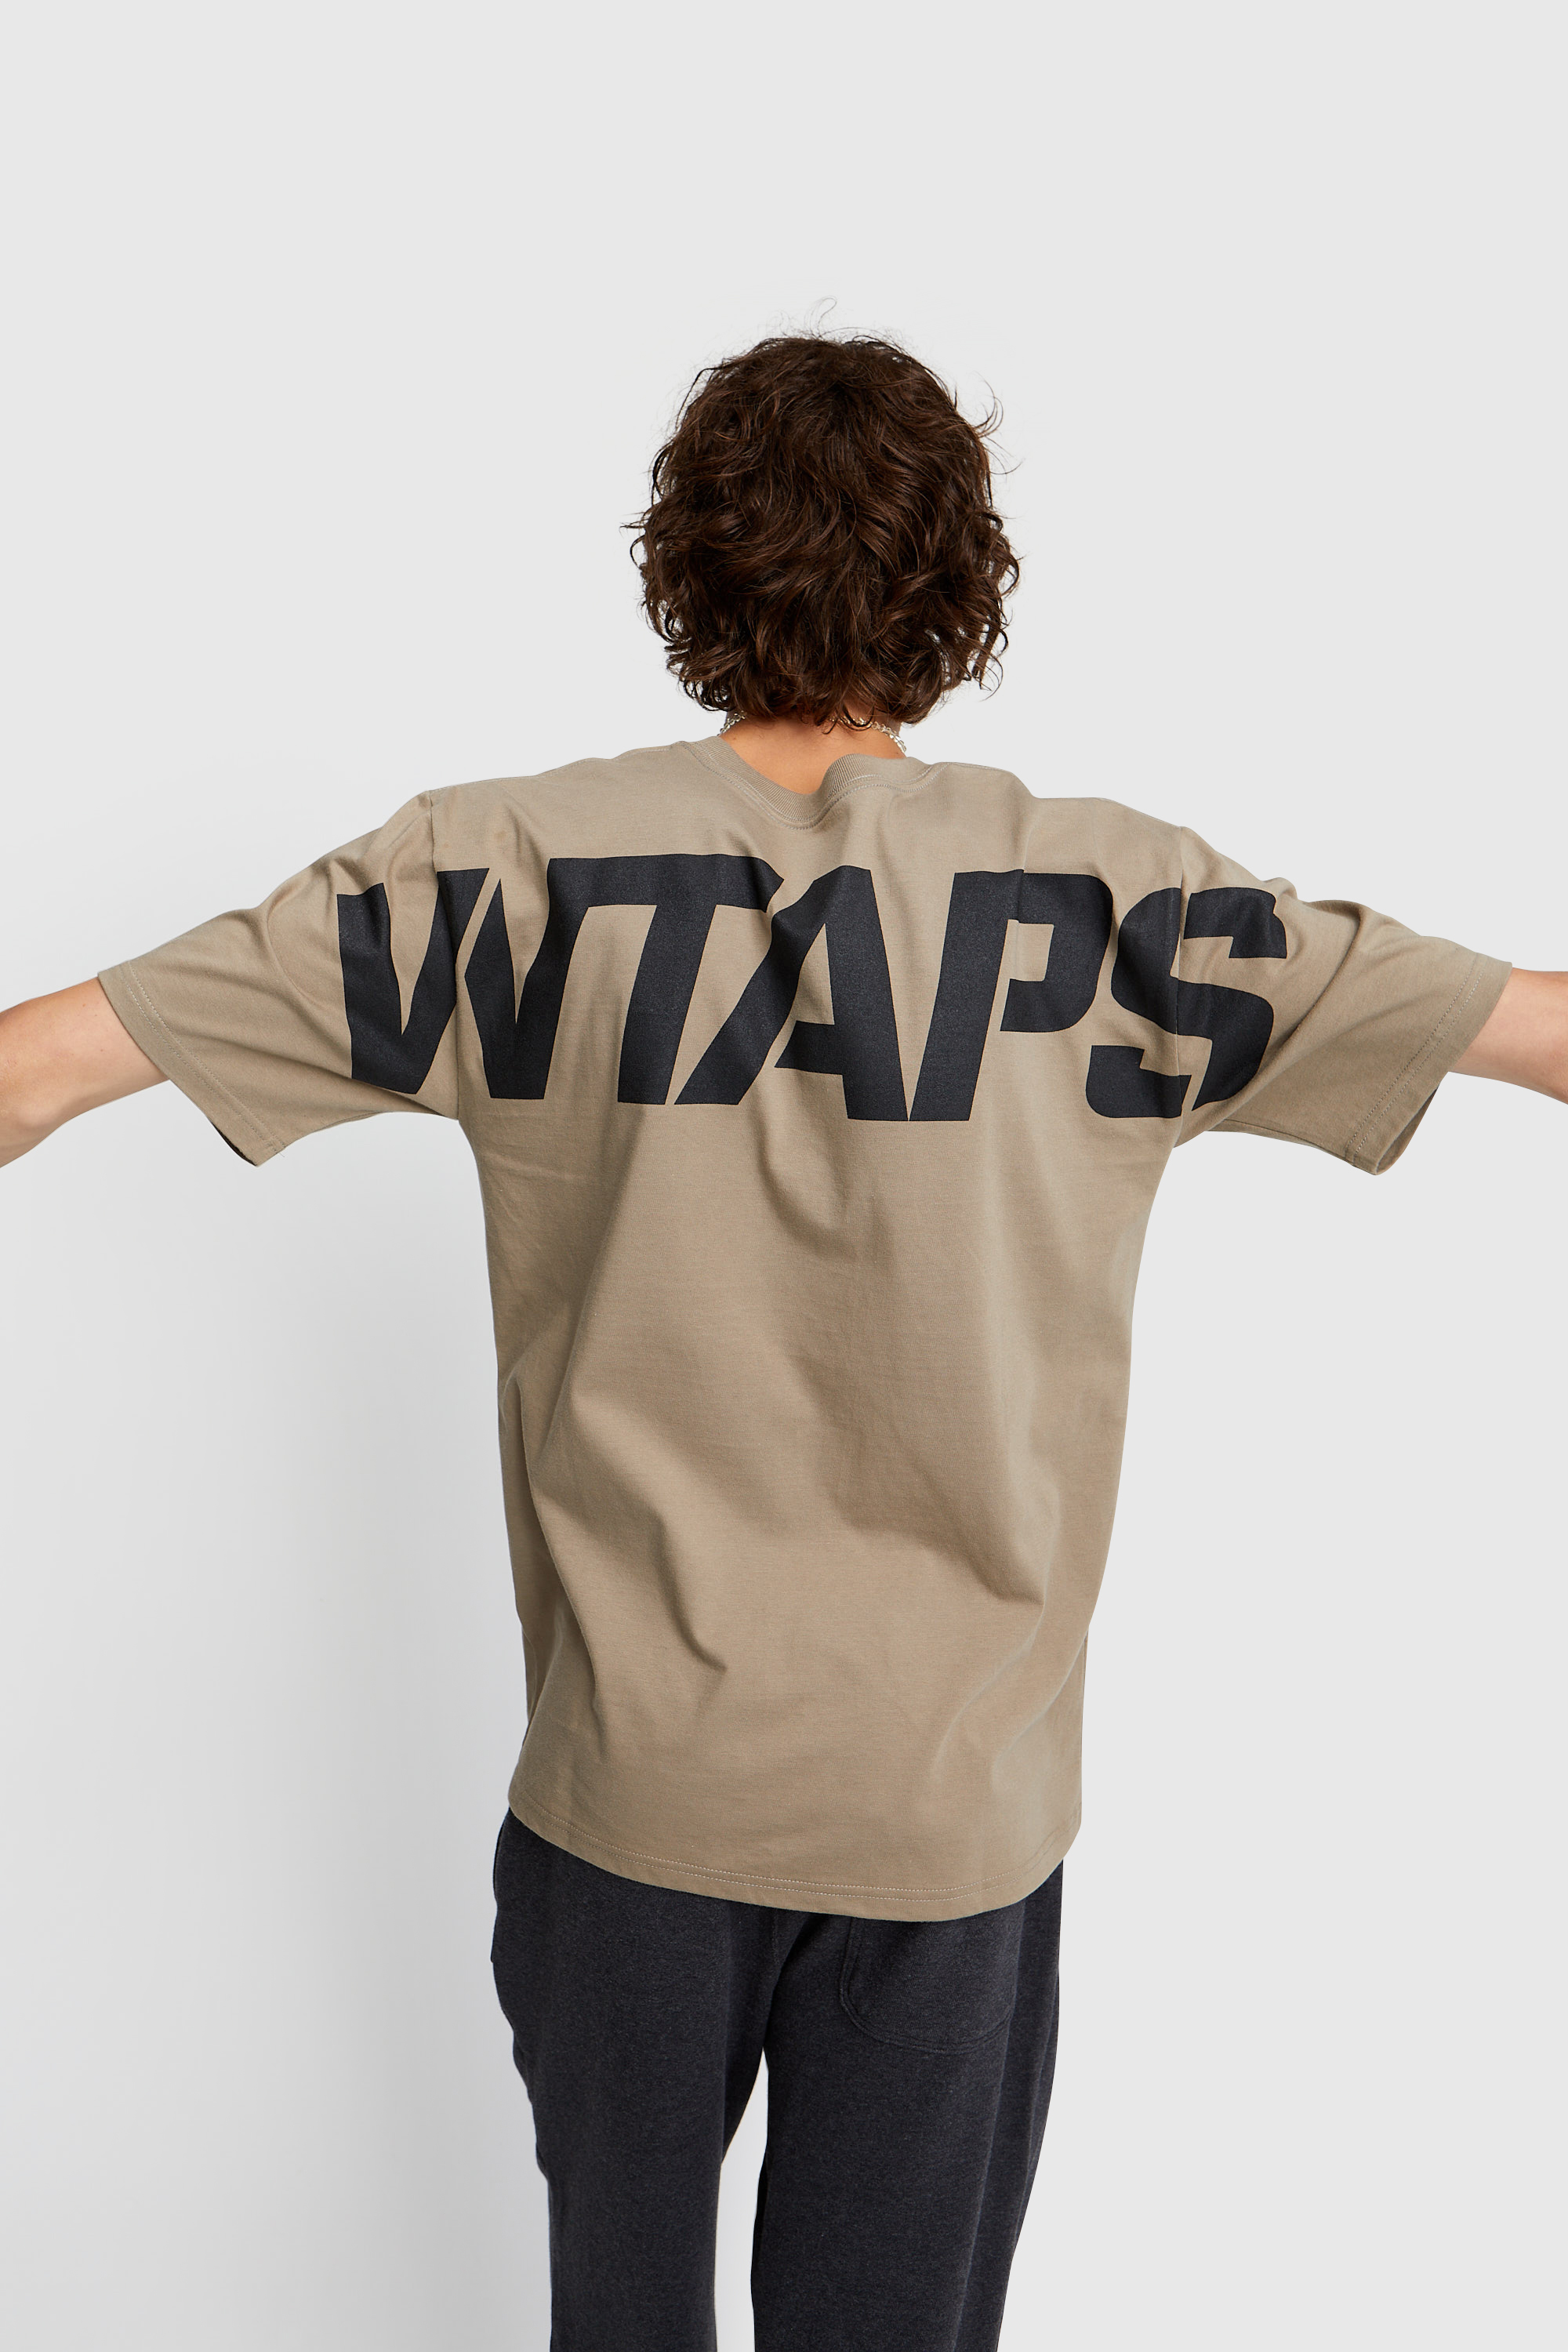 カットソー】 W)taps - WTAPS STENCIL Tシャツ の通販 by おいどん's